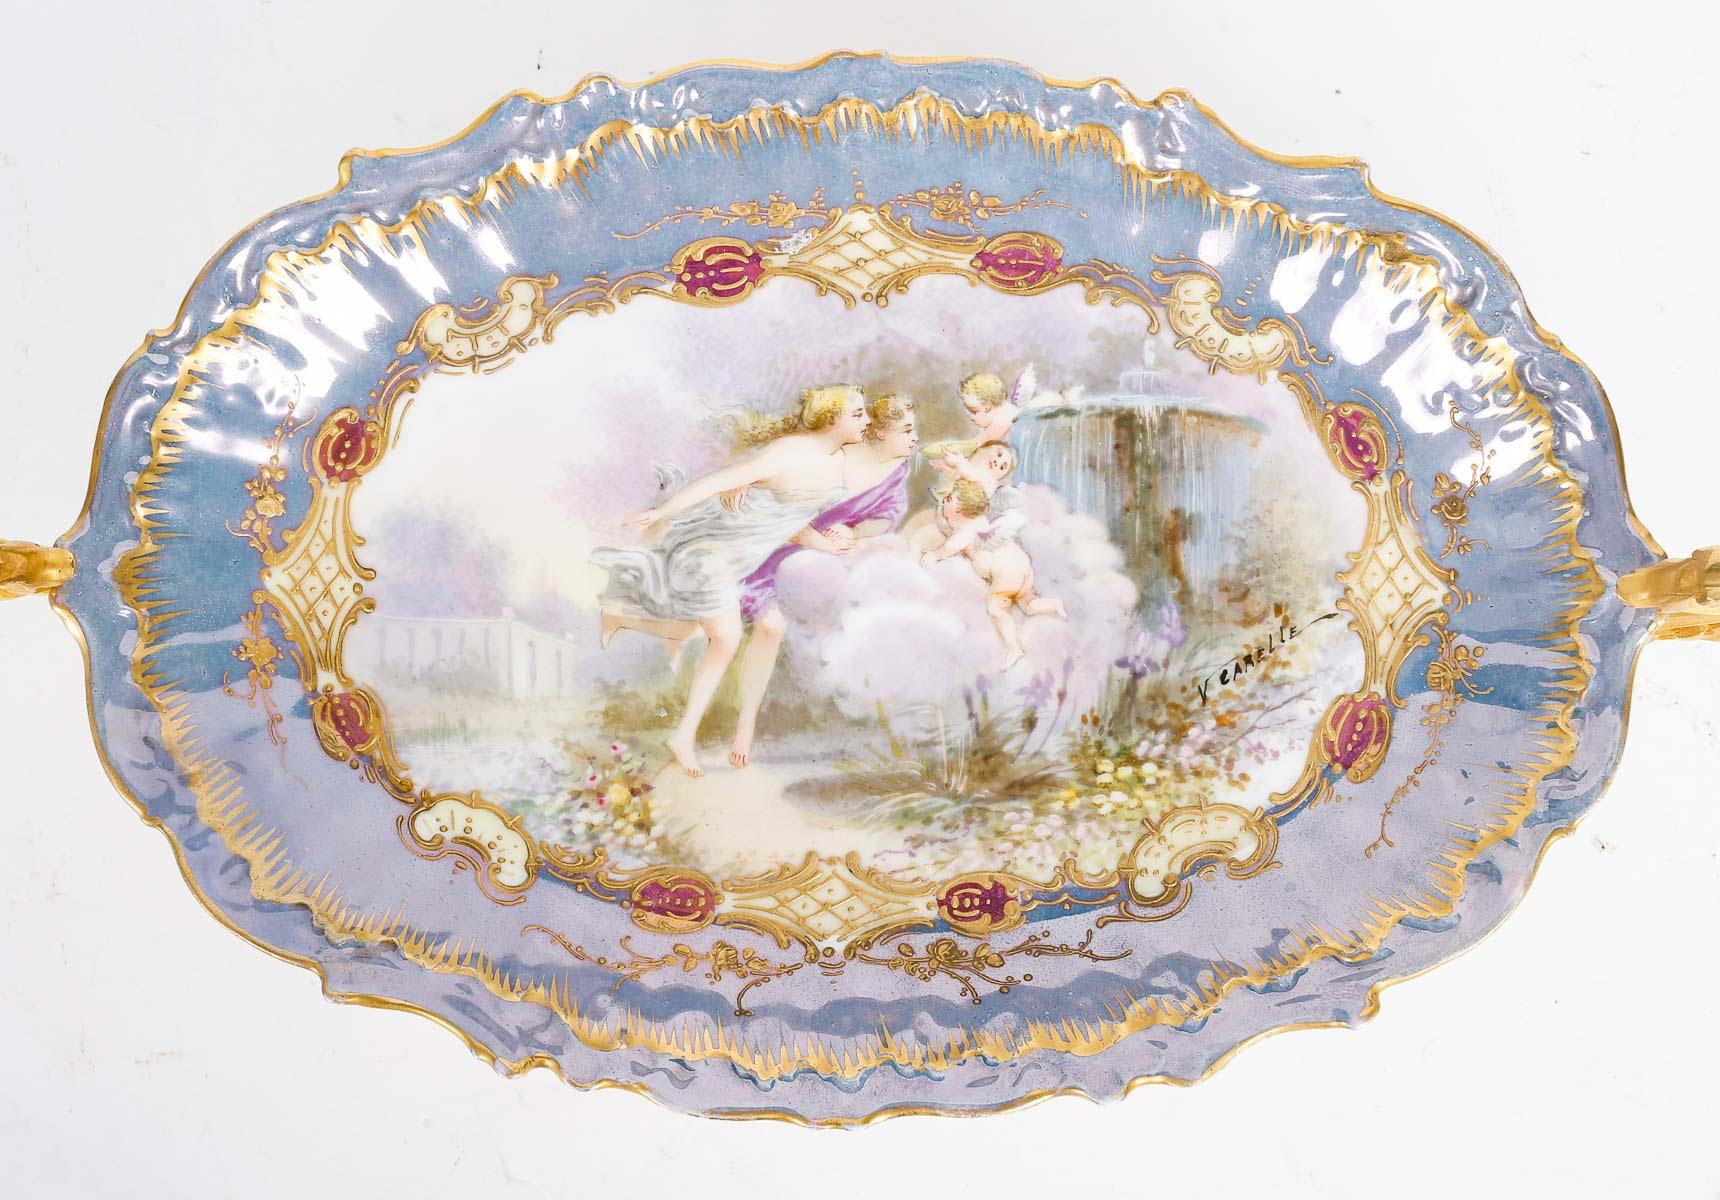 A 19th century Sèvres porcelain bowl, Napoleon III period.

A Sèvres porcelain bowl, gilt bronze mounting, 19th century, Napoleon III period.
h: 11cm, w: 38cm, d: 18cm